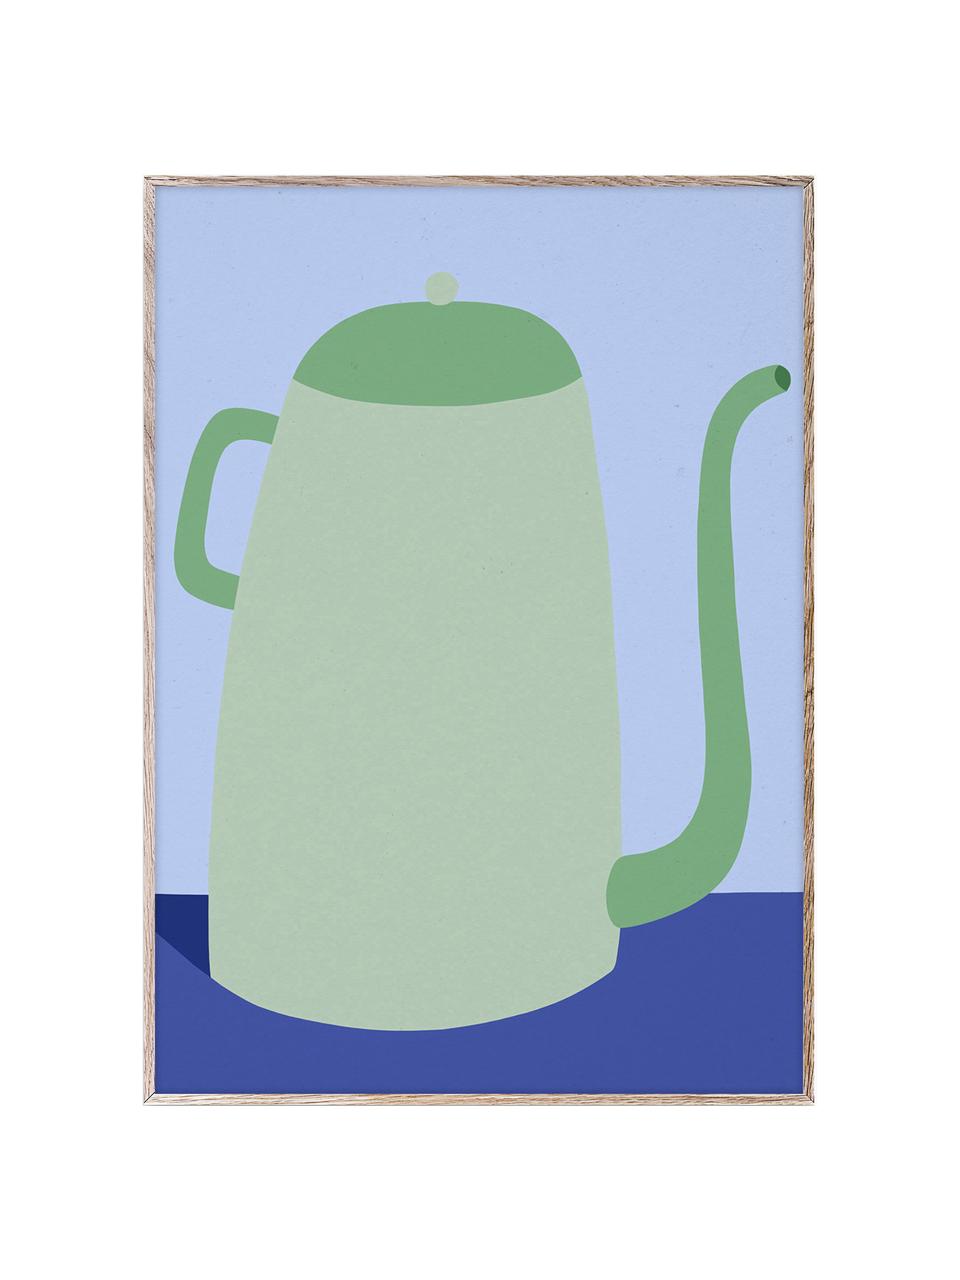 Poster Cafetiere, 210 g de papier mat de la marque Hahnemühle, impression numérique avec 10 couleurs résistantes aux UV, Tons verts et bleus, larg. 30 x haut. 40 cm